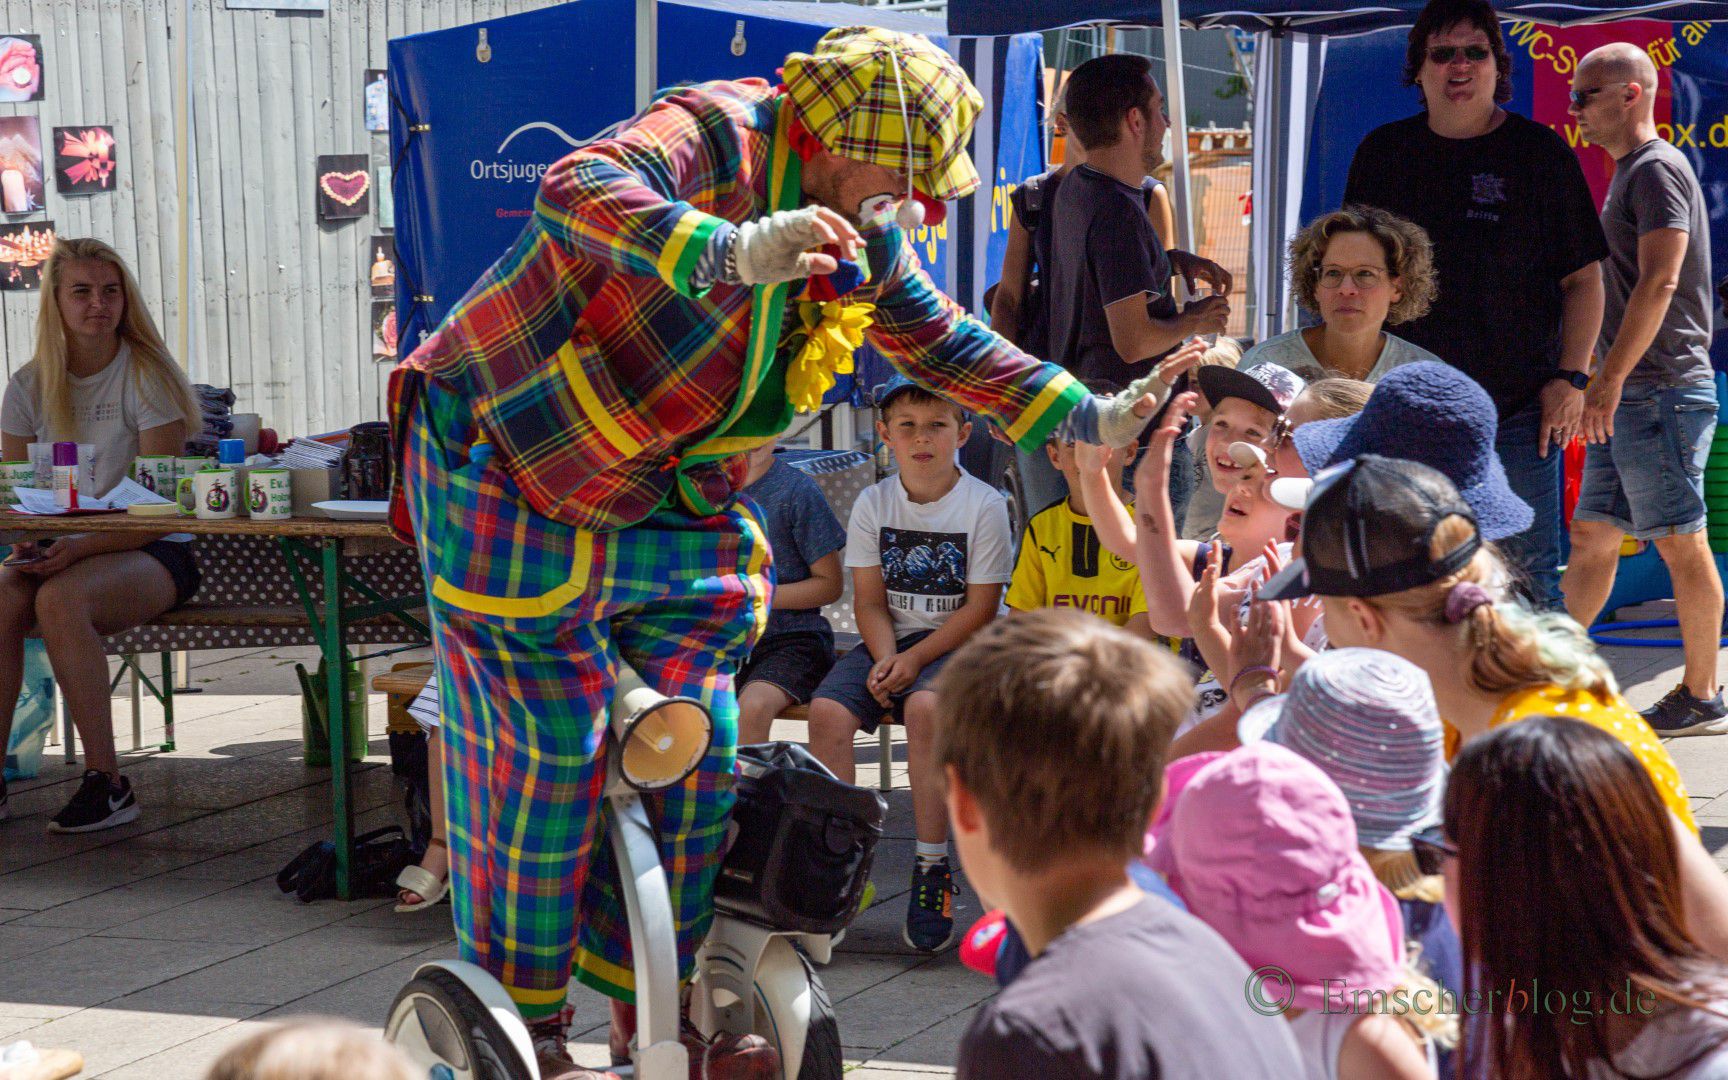 Der freche Beppo begeisterte vor allem die Kinder mit seinen Clownerien bei Ferienspaß-Eröffnung am Samstag auf dem Marktplatz. (Foto: P. Gräber - Emscherblog)